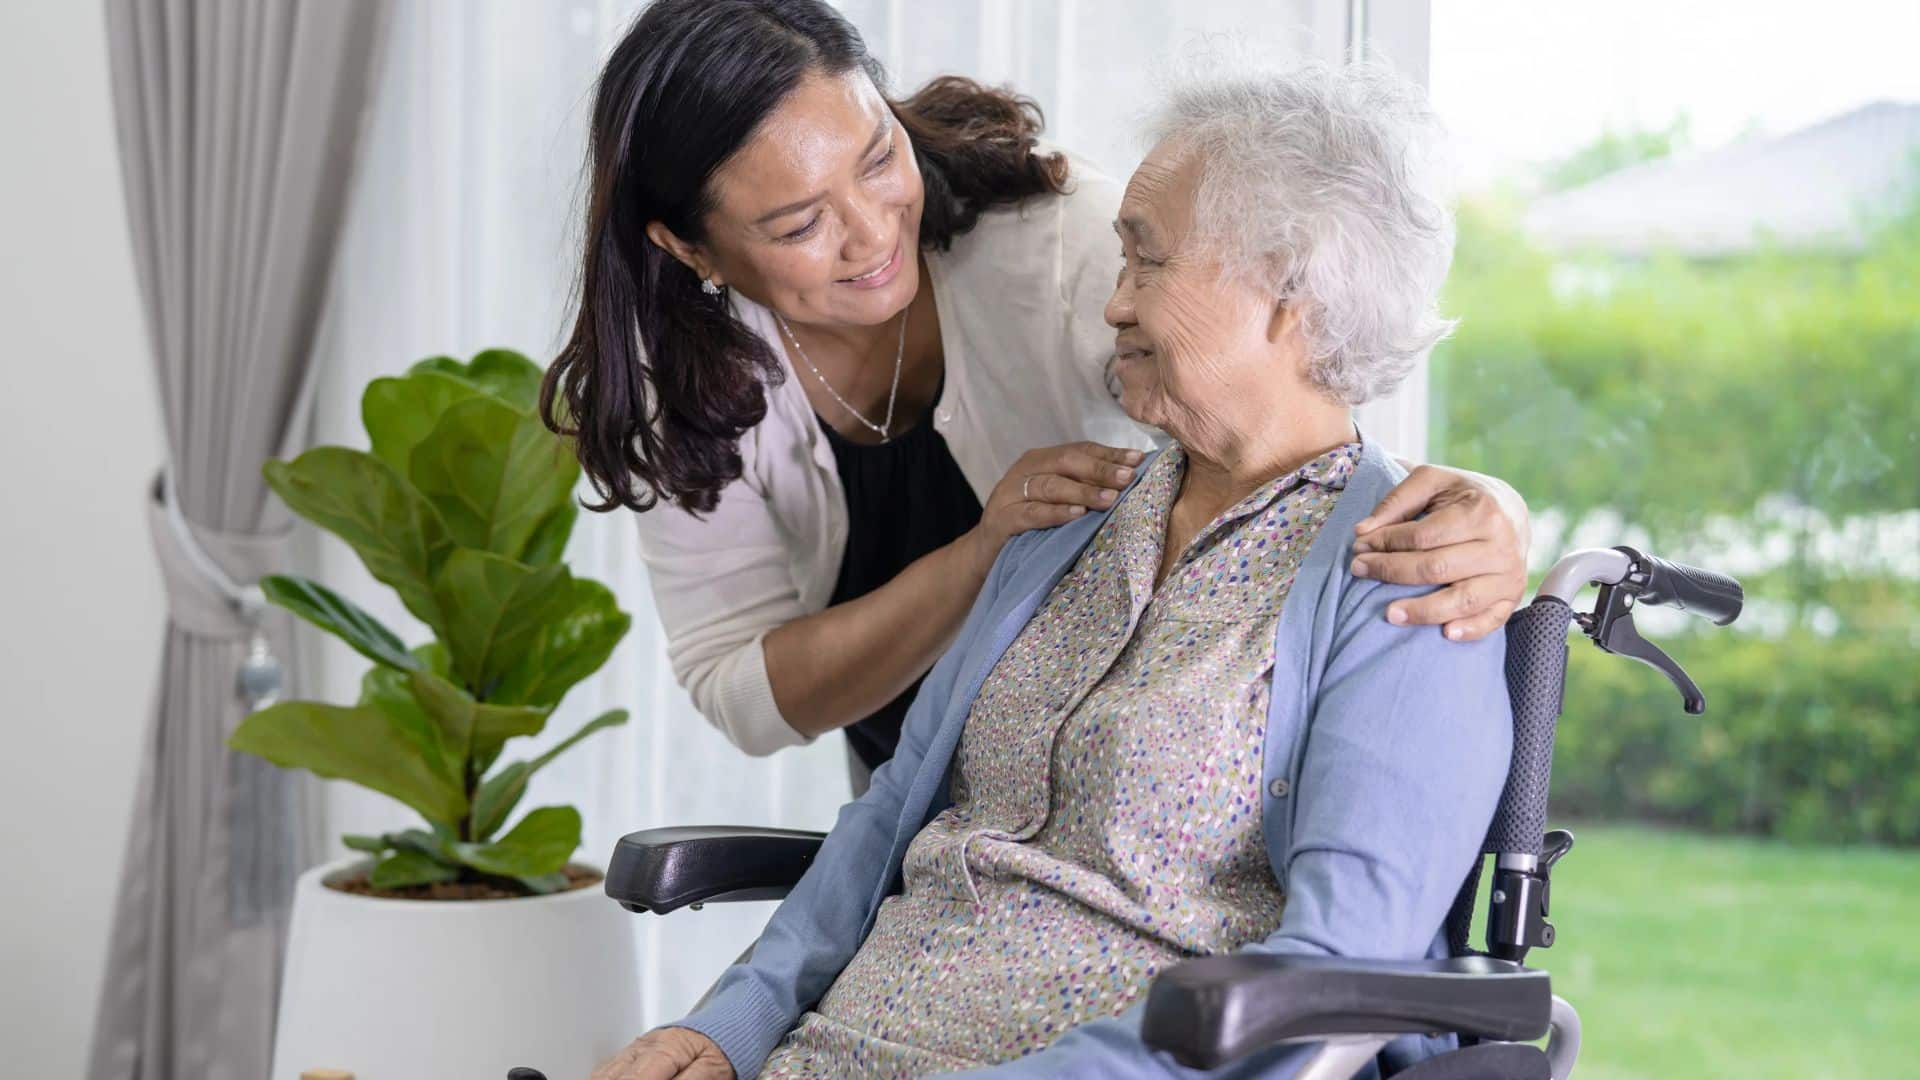 Bürgergeld: Angehörige pflegen und Rente erhalten - wie wird Pflege angerechnet?